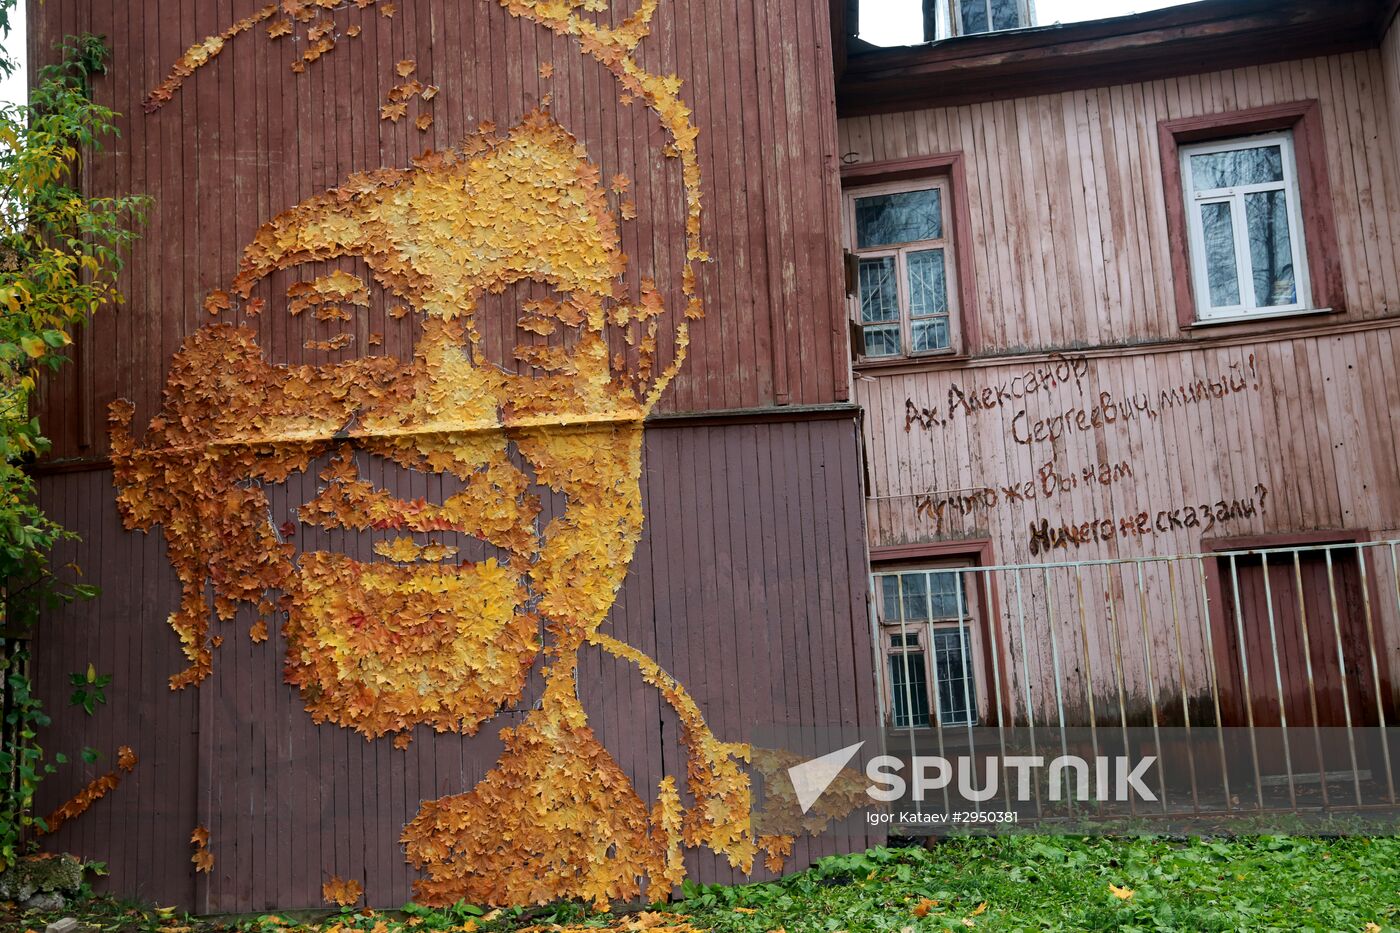 Street artist makes Yury Shevchyuk's portrait from fall leaves in Perm